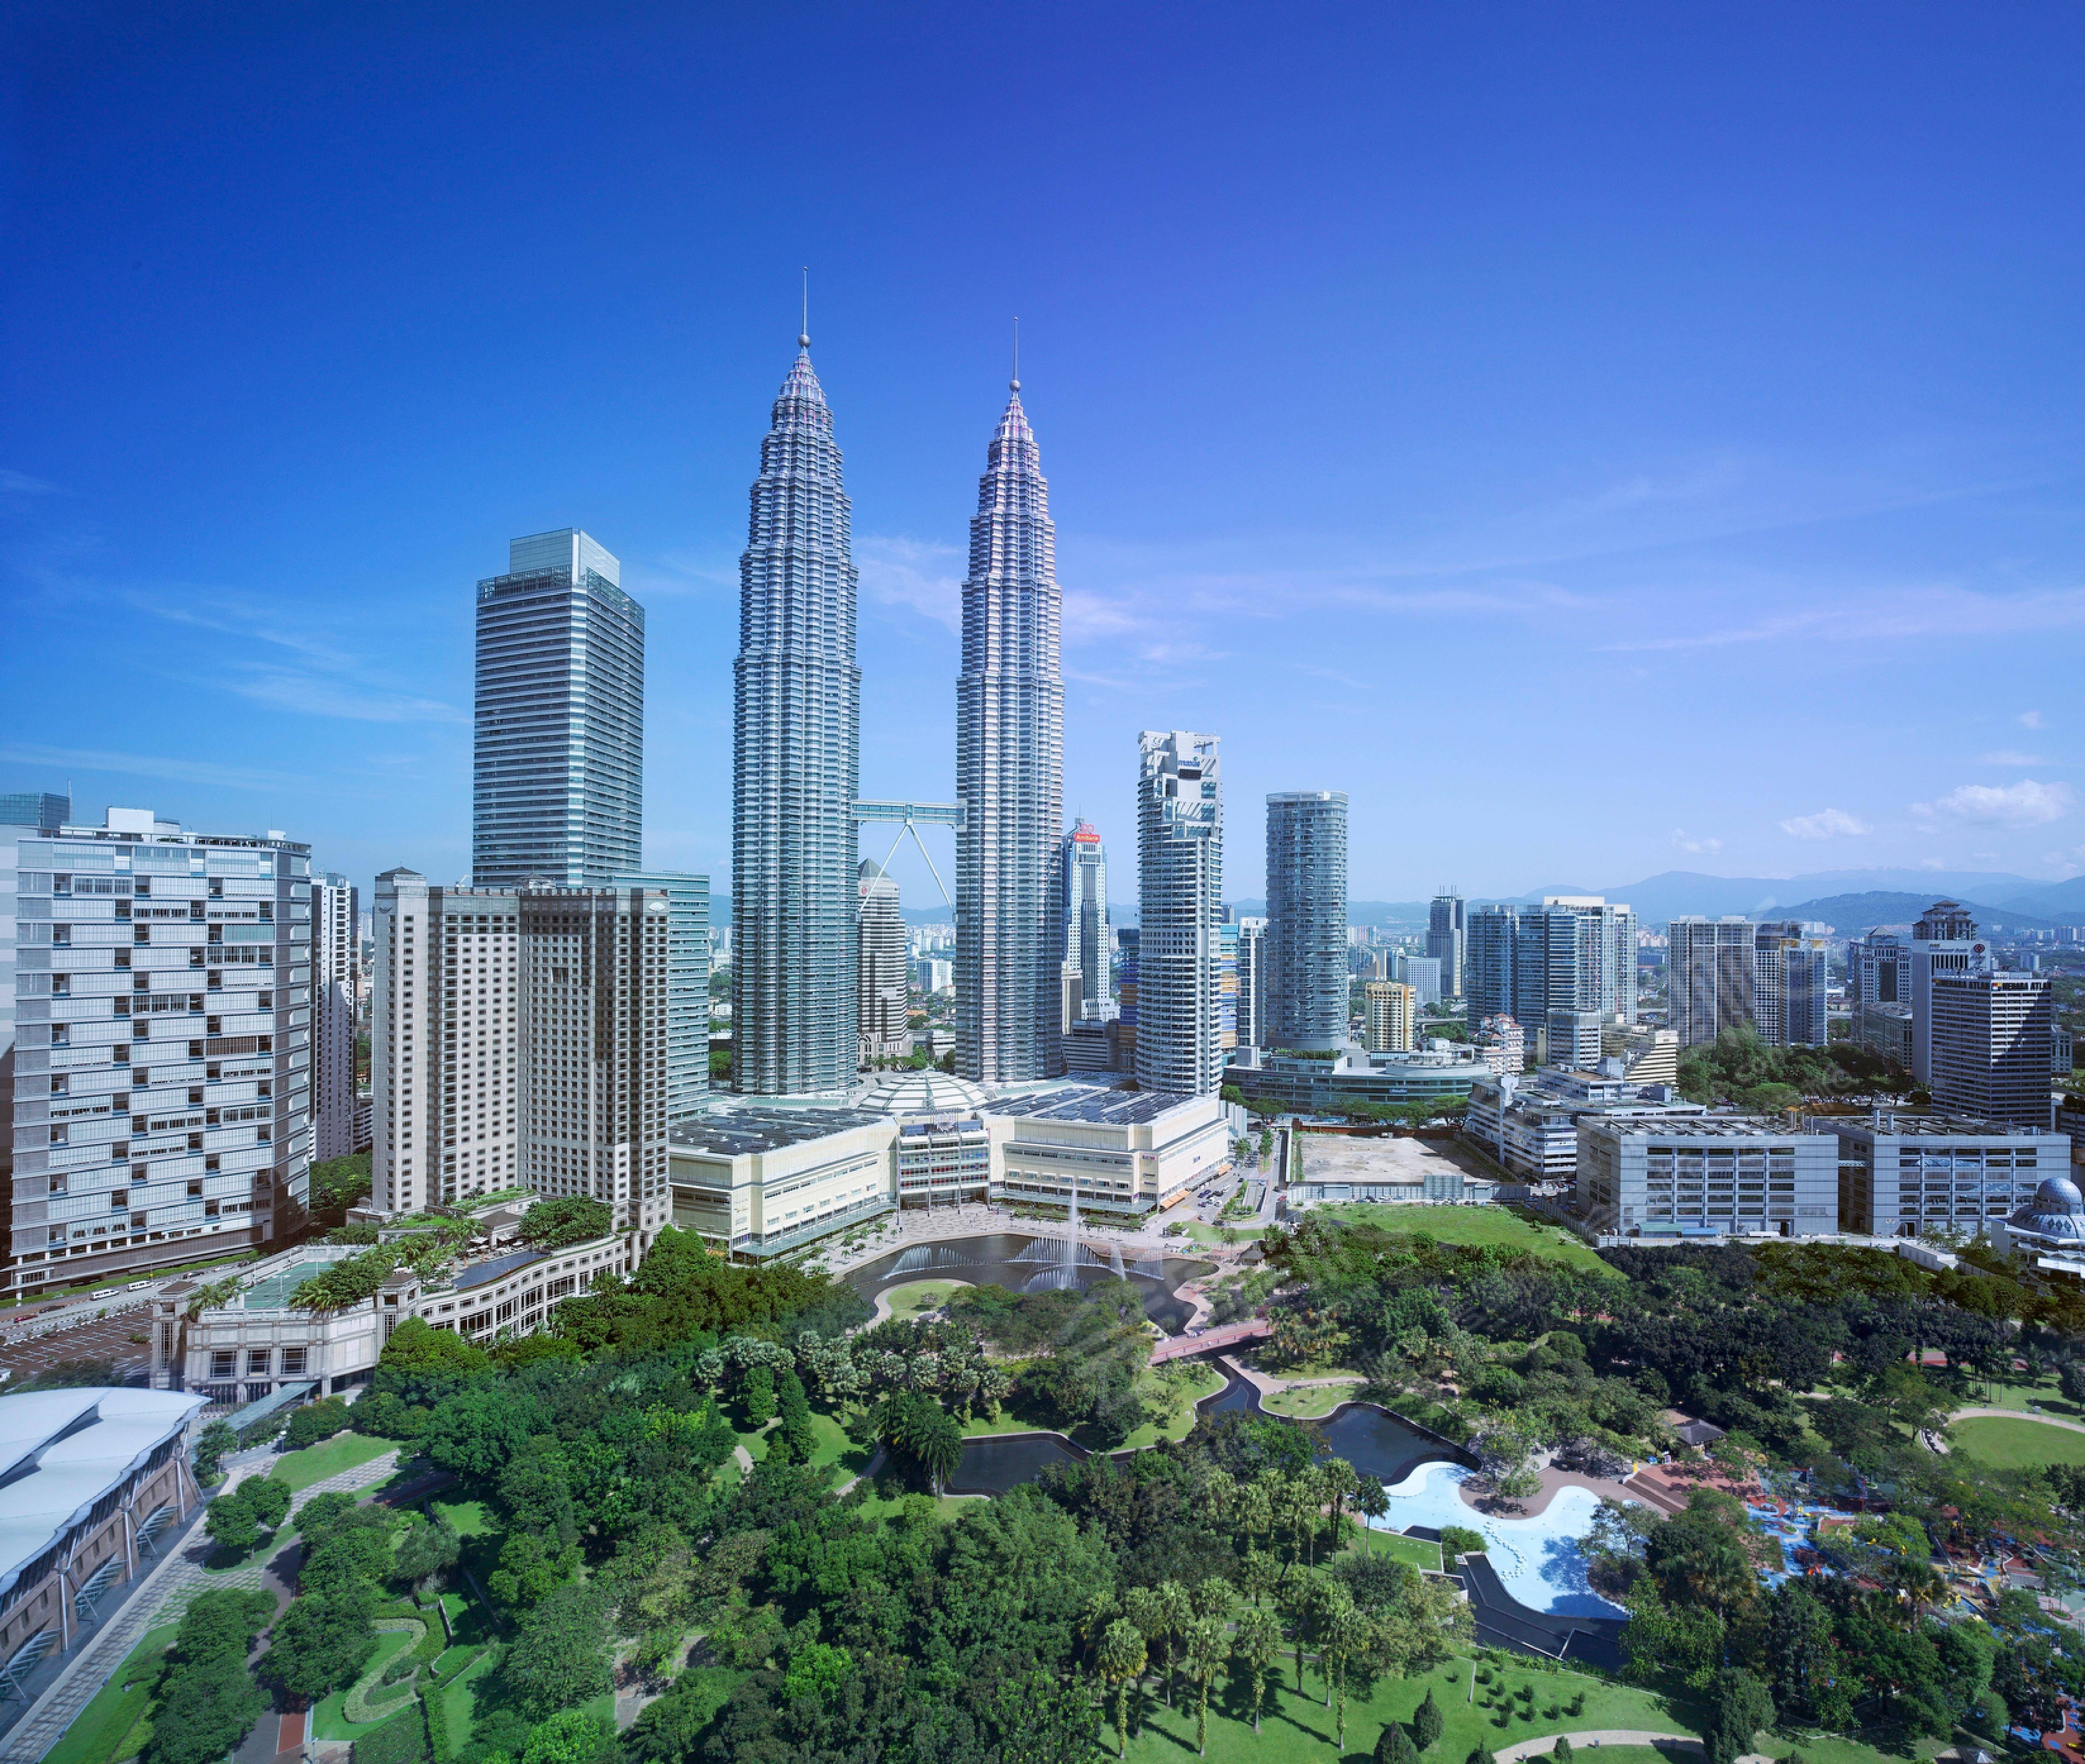 吉隆坡五星级酒店最大容纳400人的会议场地|吉隆坡盛贸饭店(Traders Hotel Kuala Lumpur)的价格与联系方式